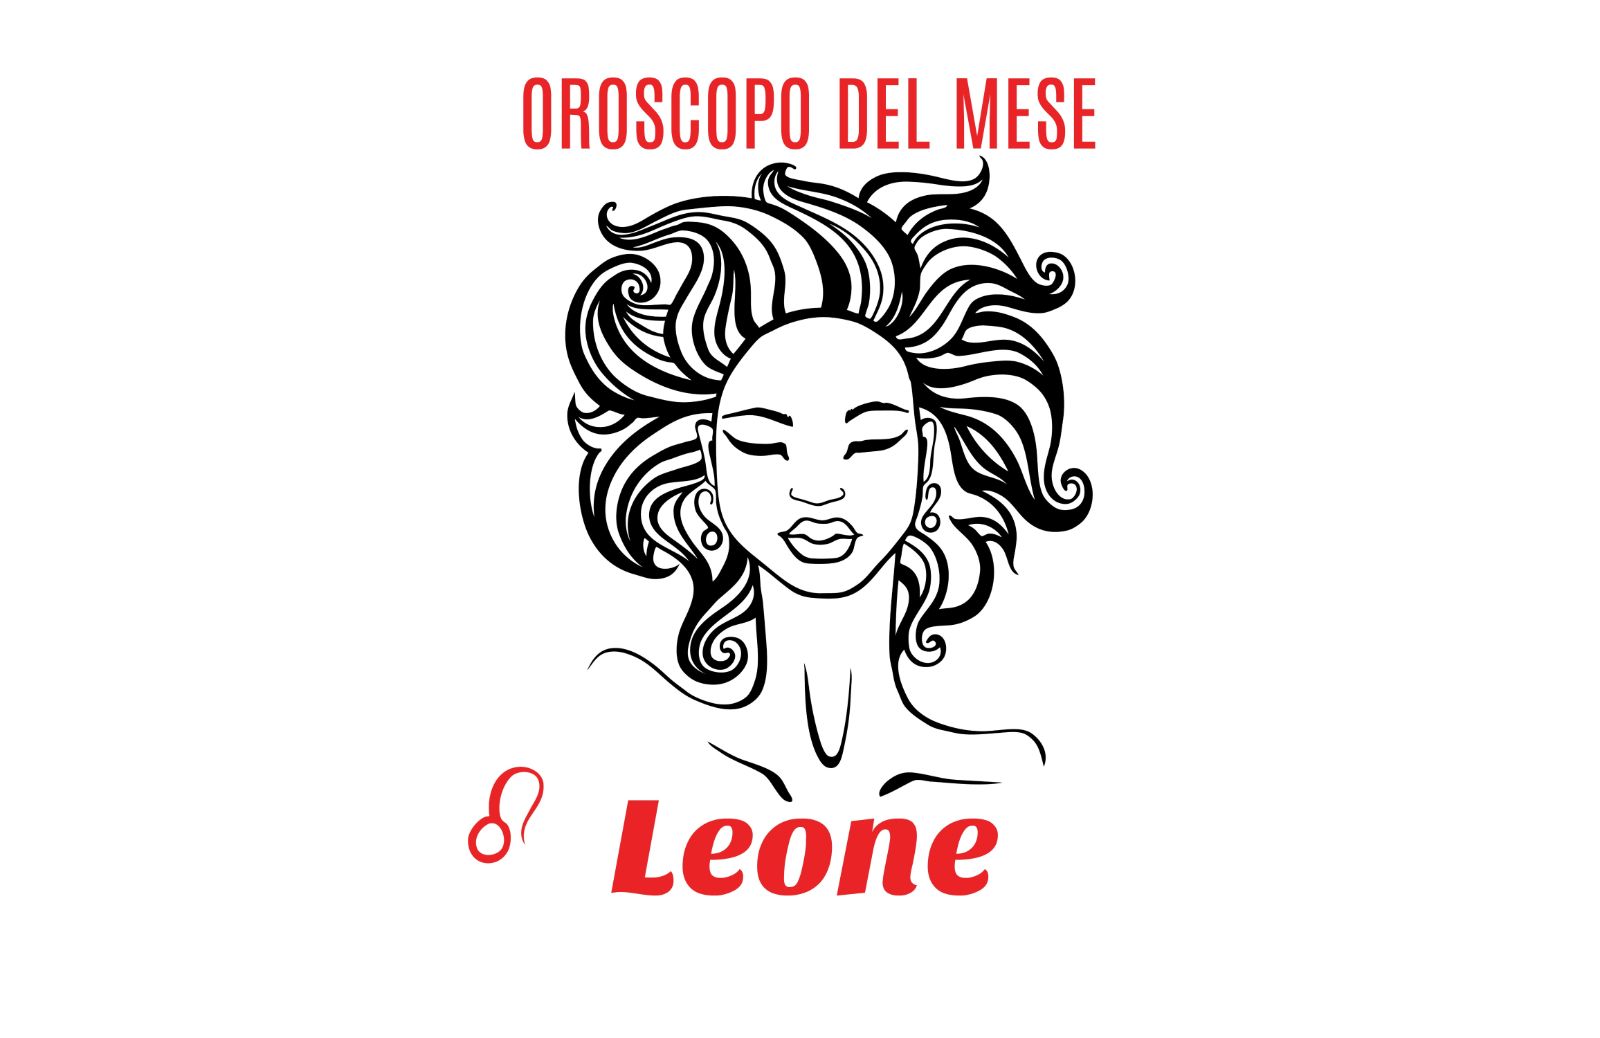 Oroscopo del mese: Leone - settembre 2020